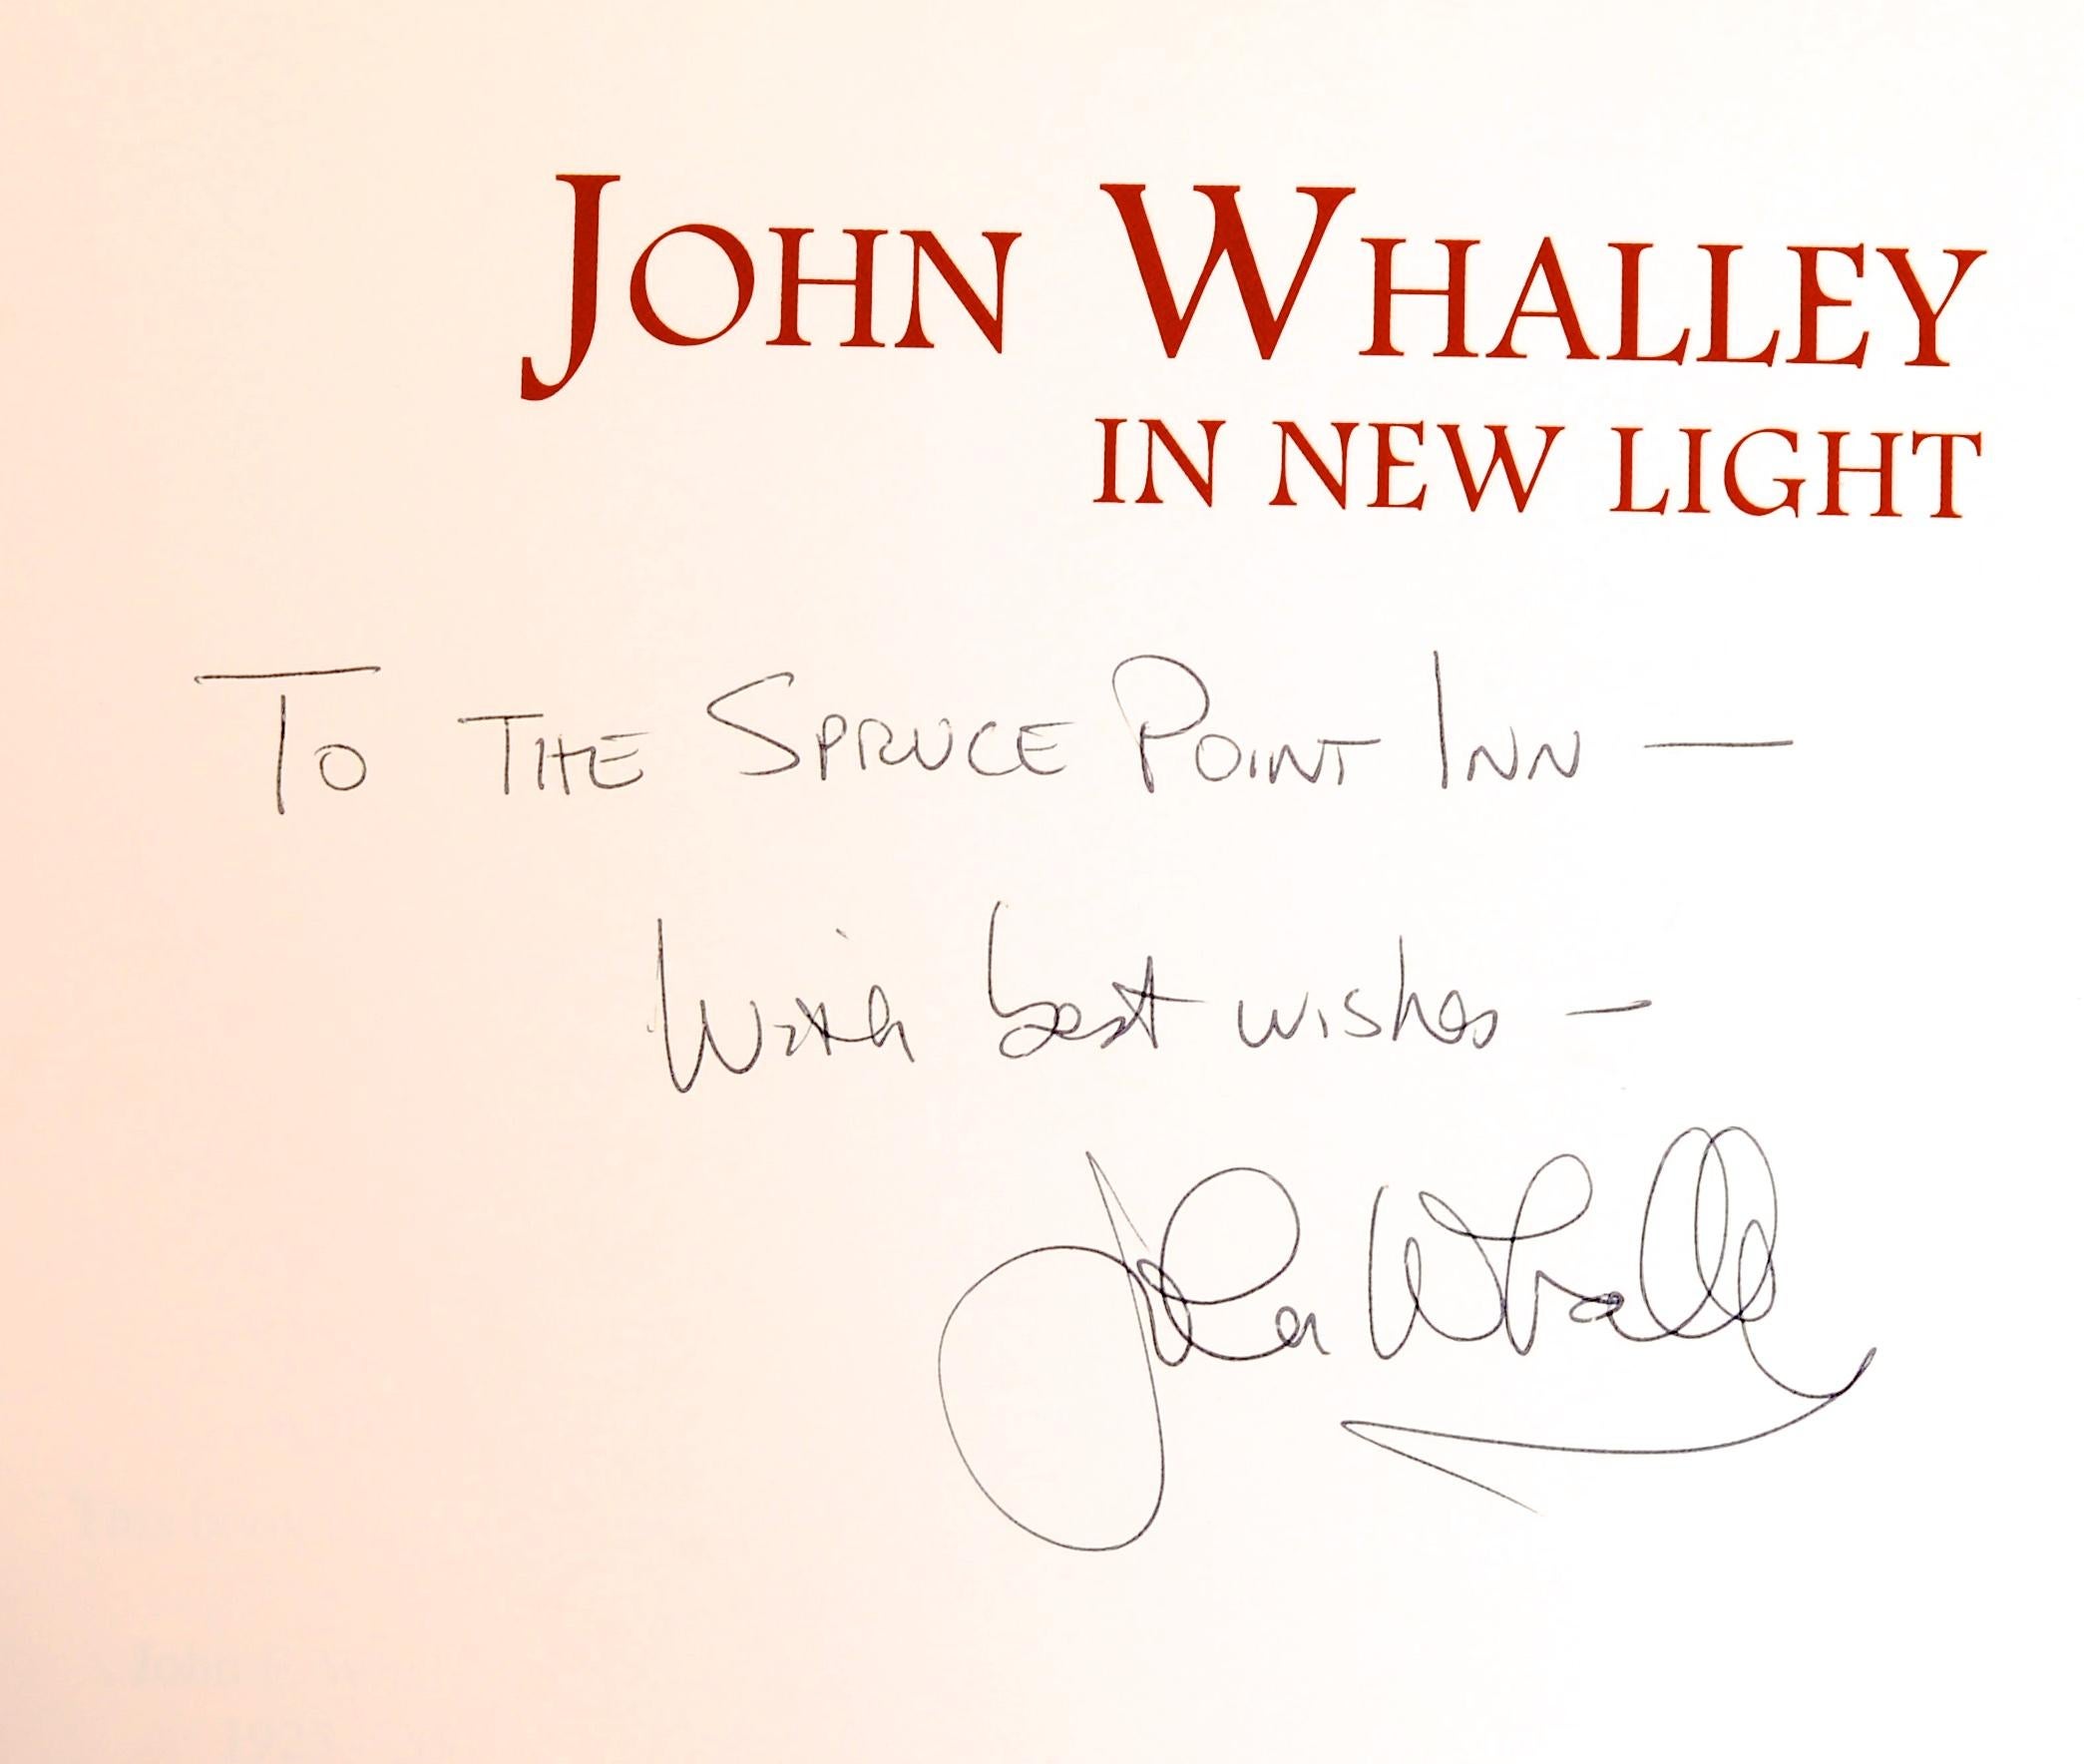 John Whalley: In New Light von John Whalley, signiert. Herausgegeben von John Whalley Studio, ME, 2006. Signiert 1st Ed Hardcover ohne Schutzumschlag. Der Künstler aus Maine lebt in Damariscotta. 